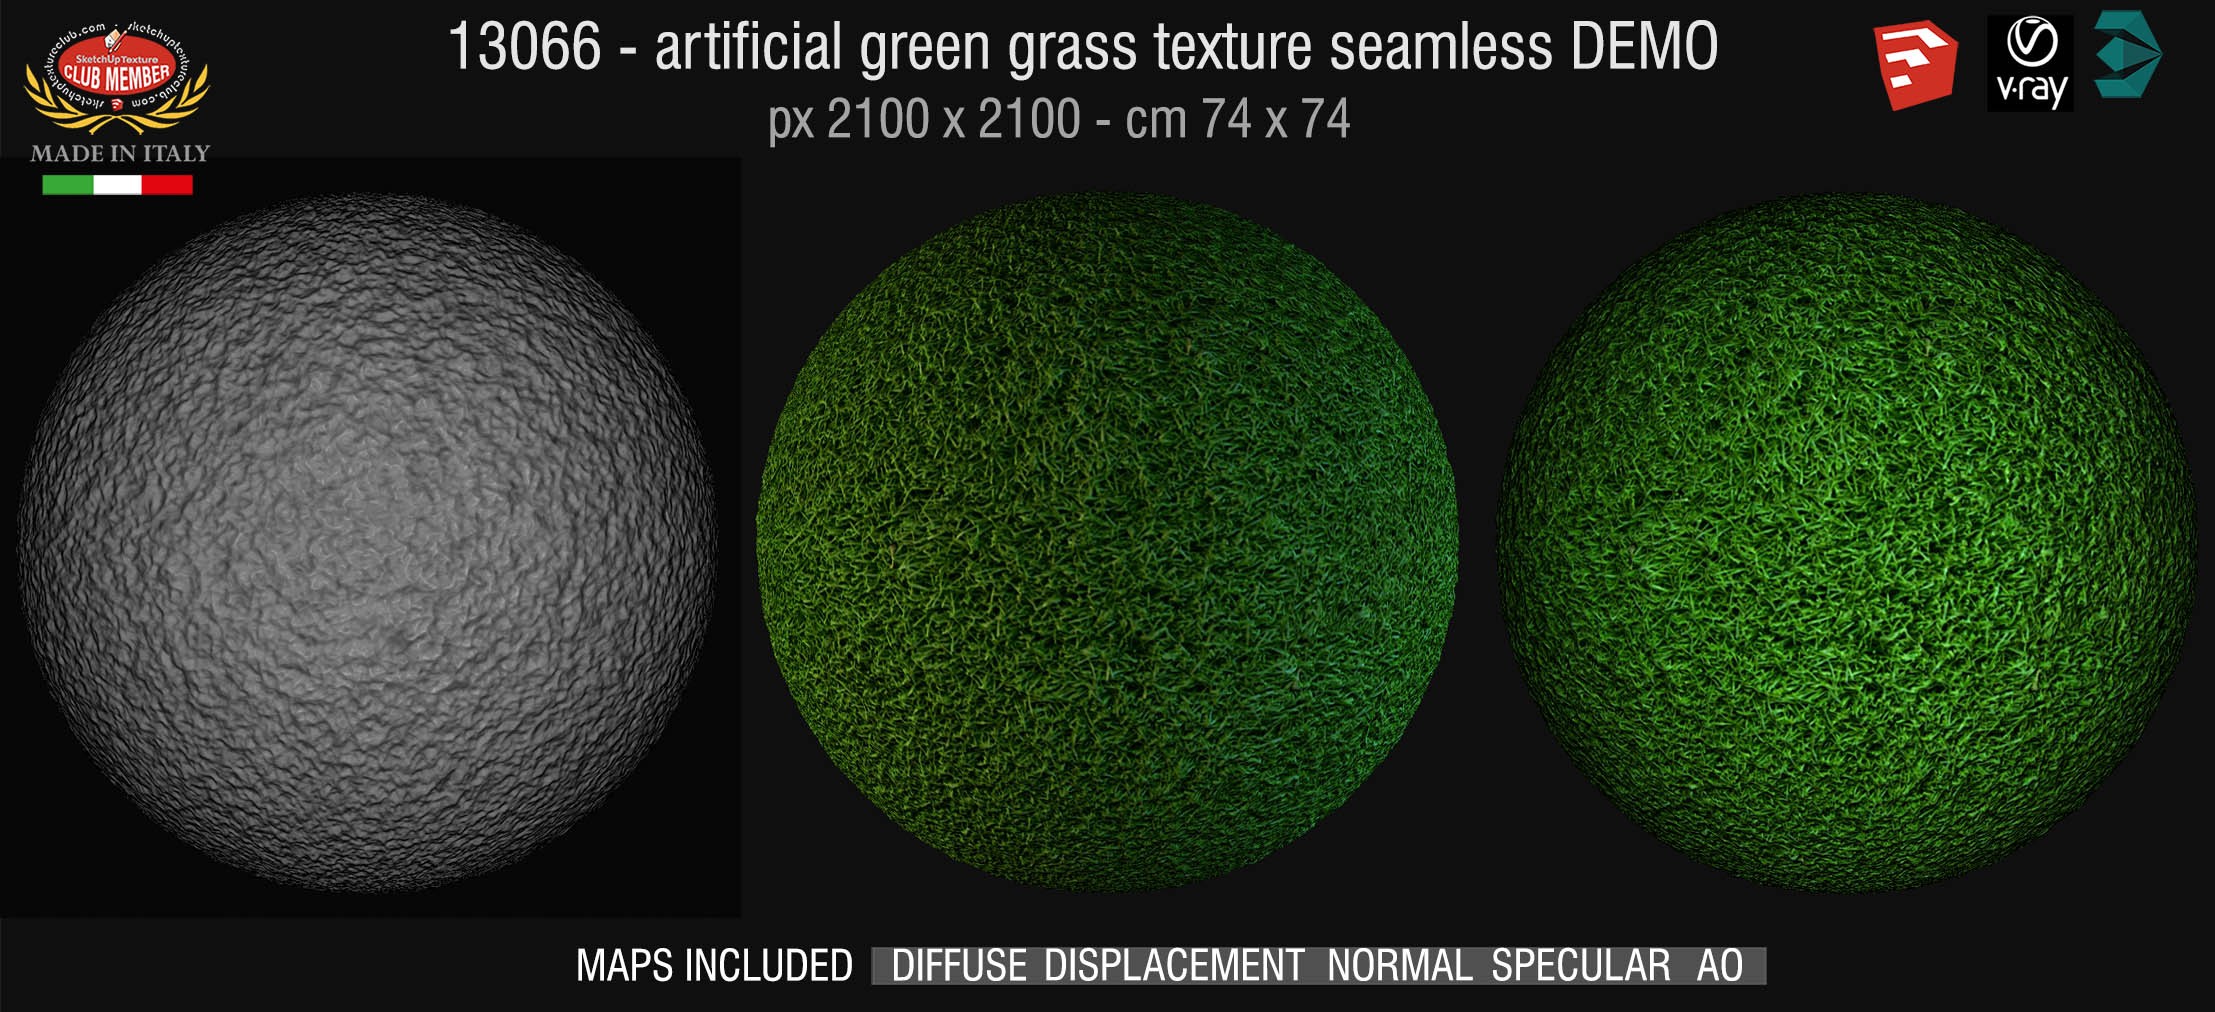 13066 HR Artificial green grass texture + maps DEMO